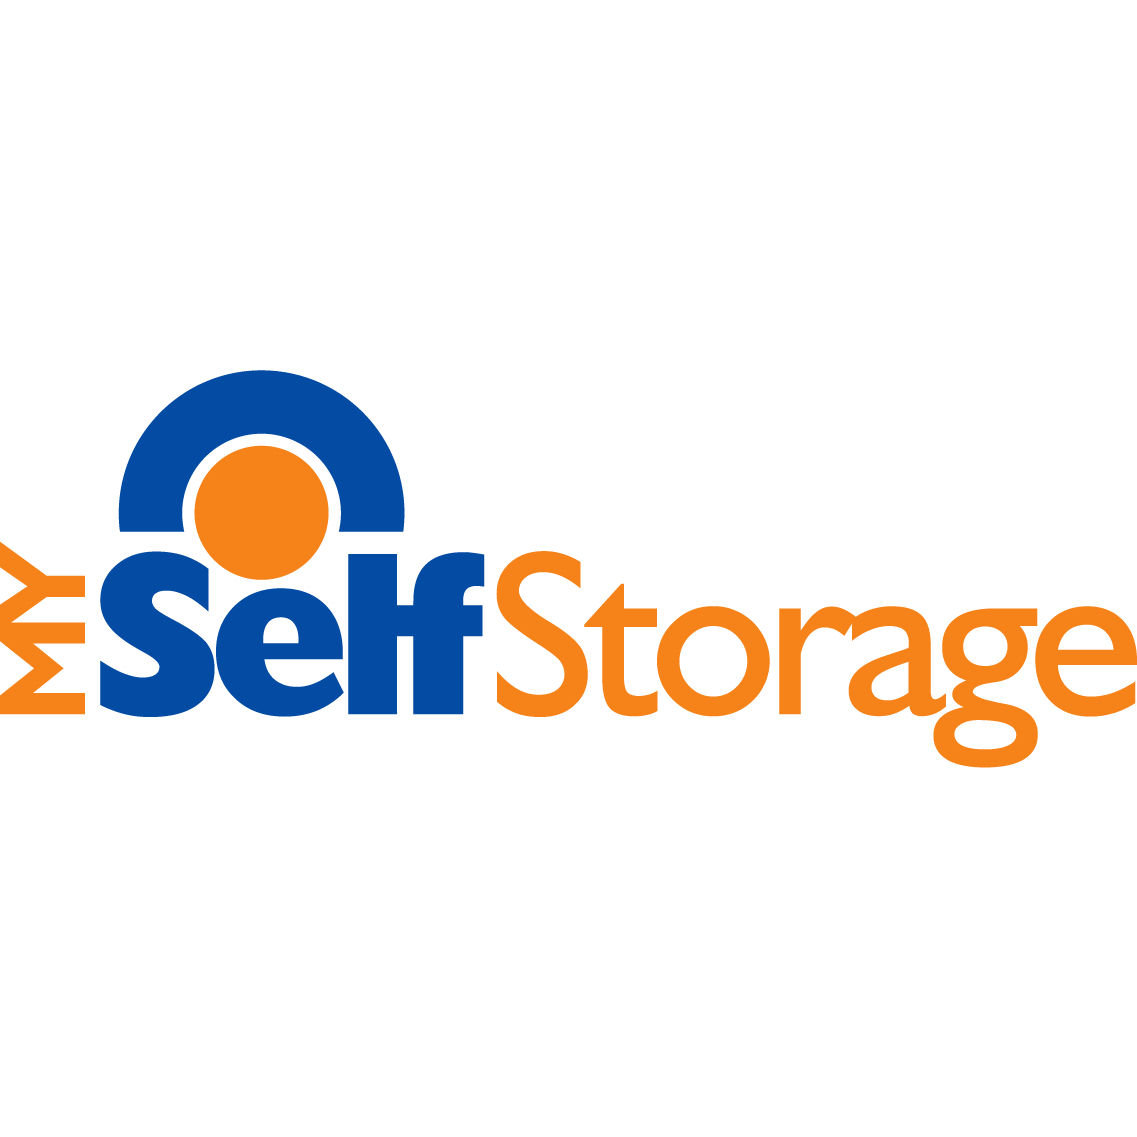 MySelfStorage - Self-Storage